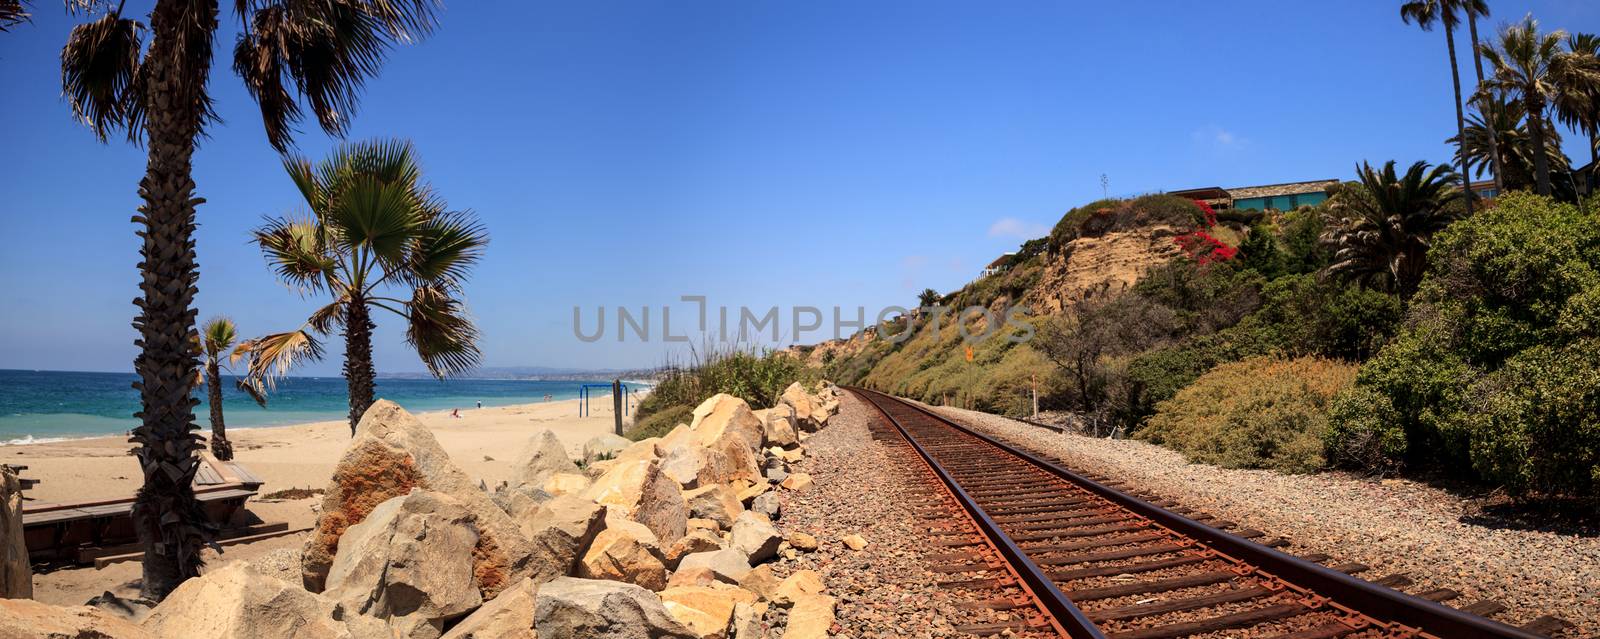 Train tracks run through San Clemente State Beach in Southern California in summer.